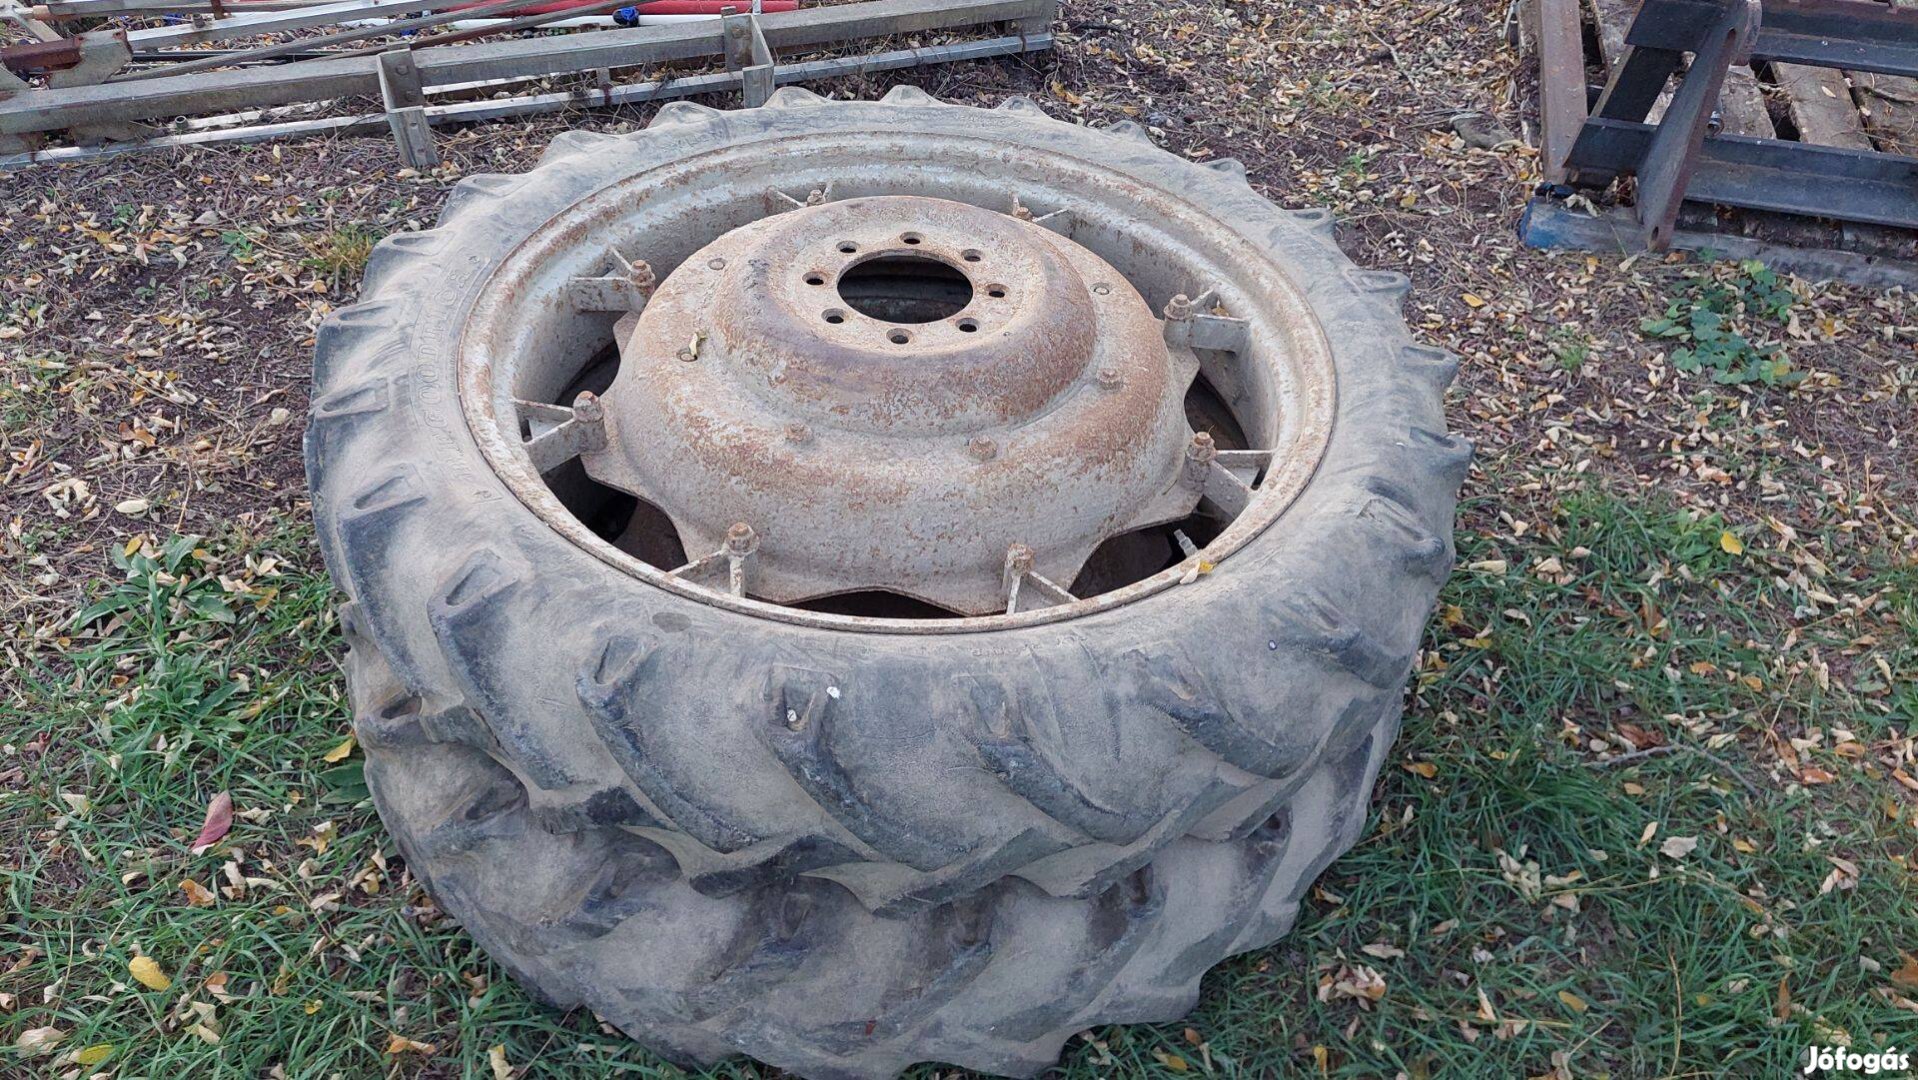 Eladó traktor kerék 9,5R36 Semperit 9,5-36